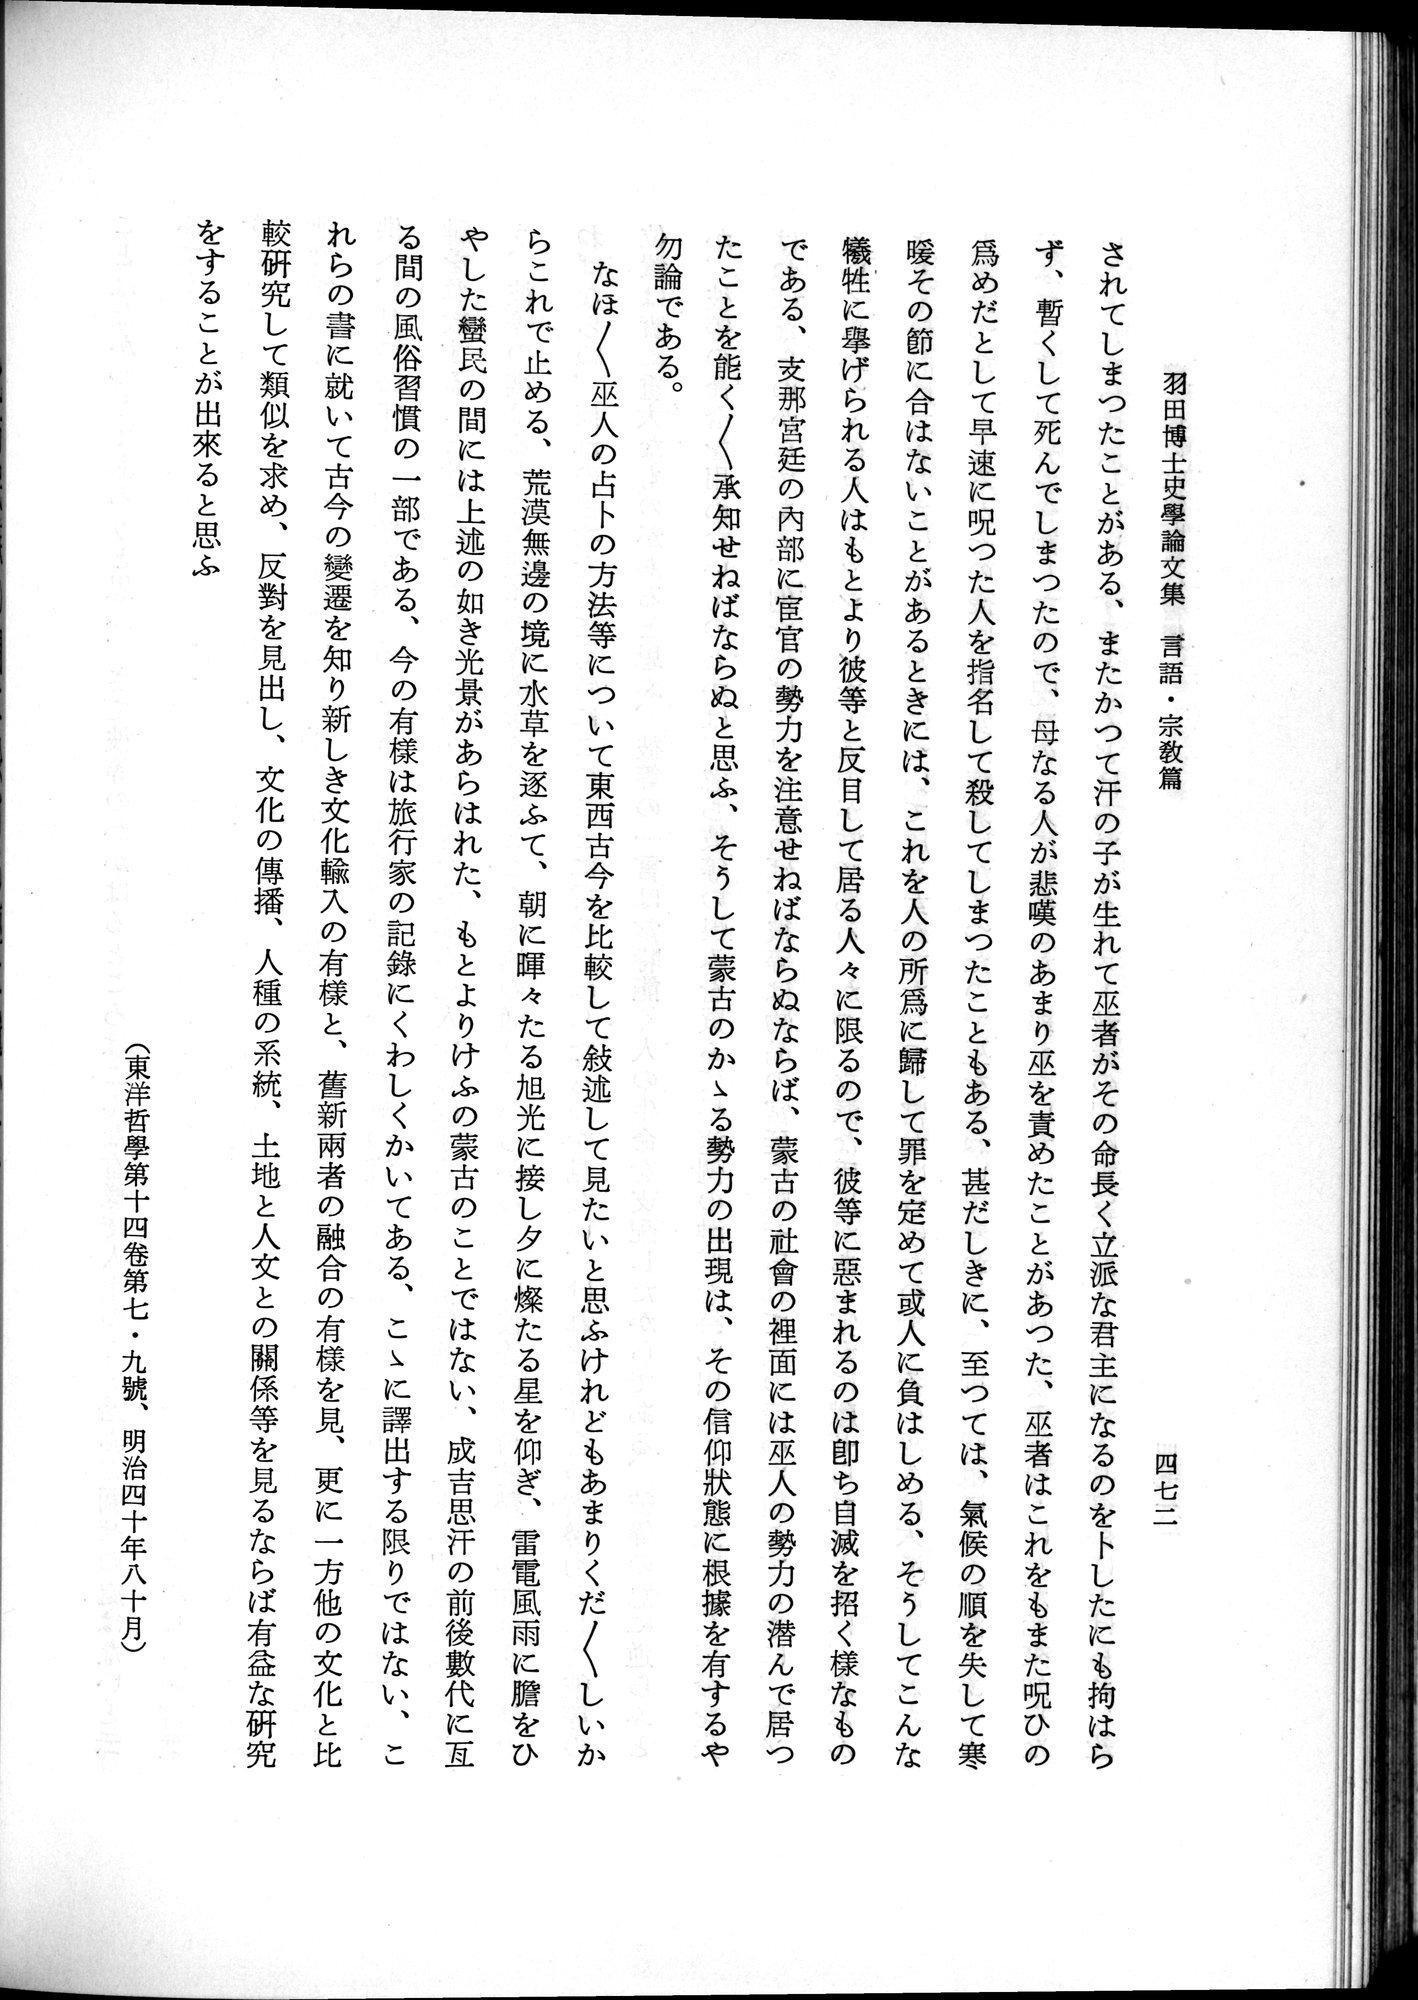 羽田博士史学論文集 : vol.2 / Page 534 (Grayscale High Resolution Image)